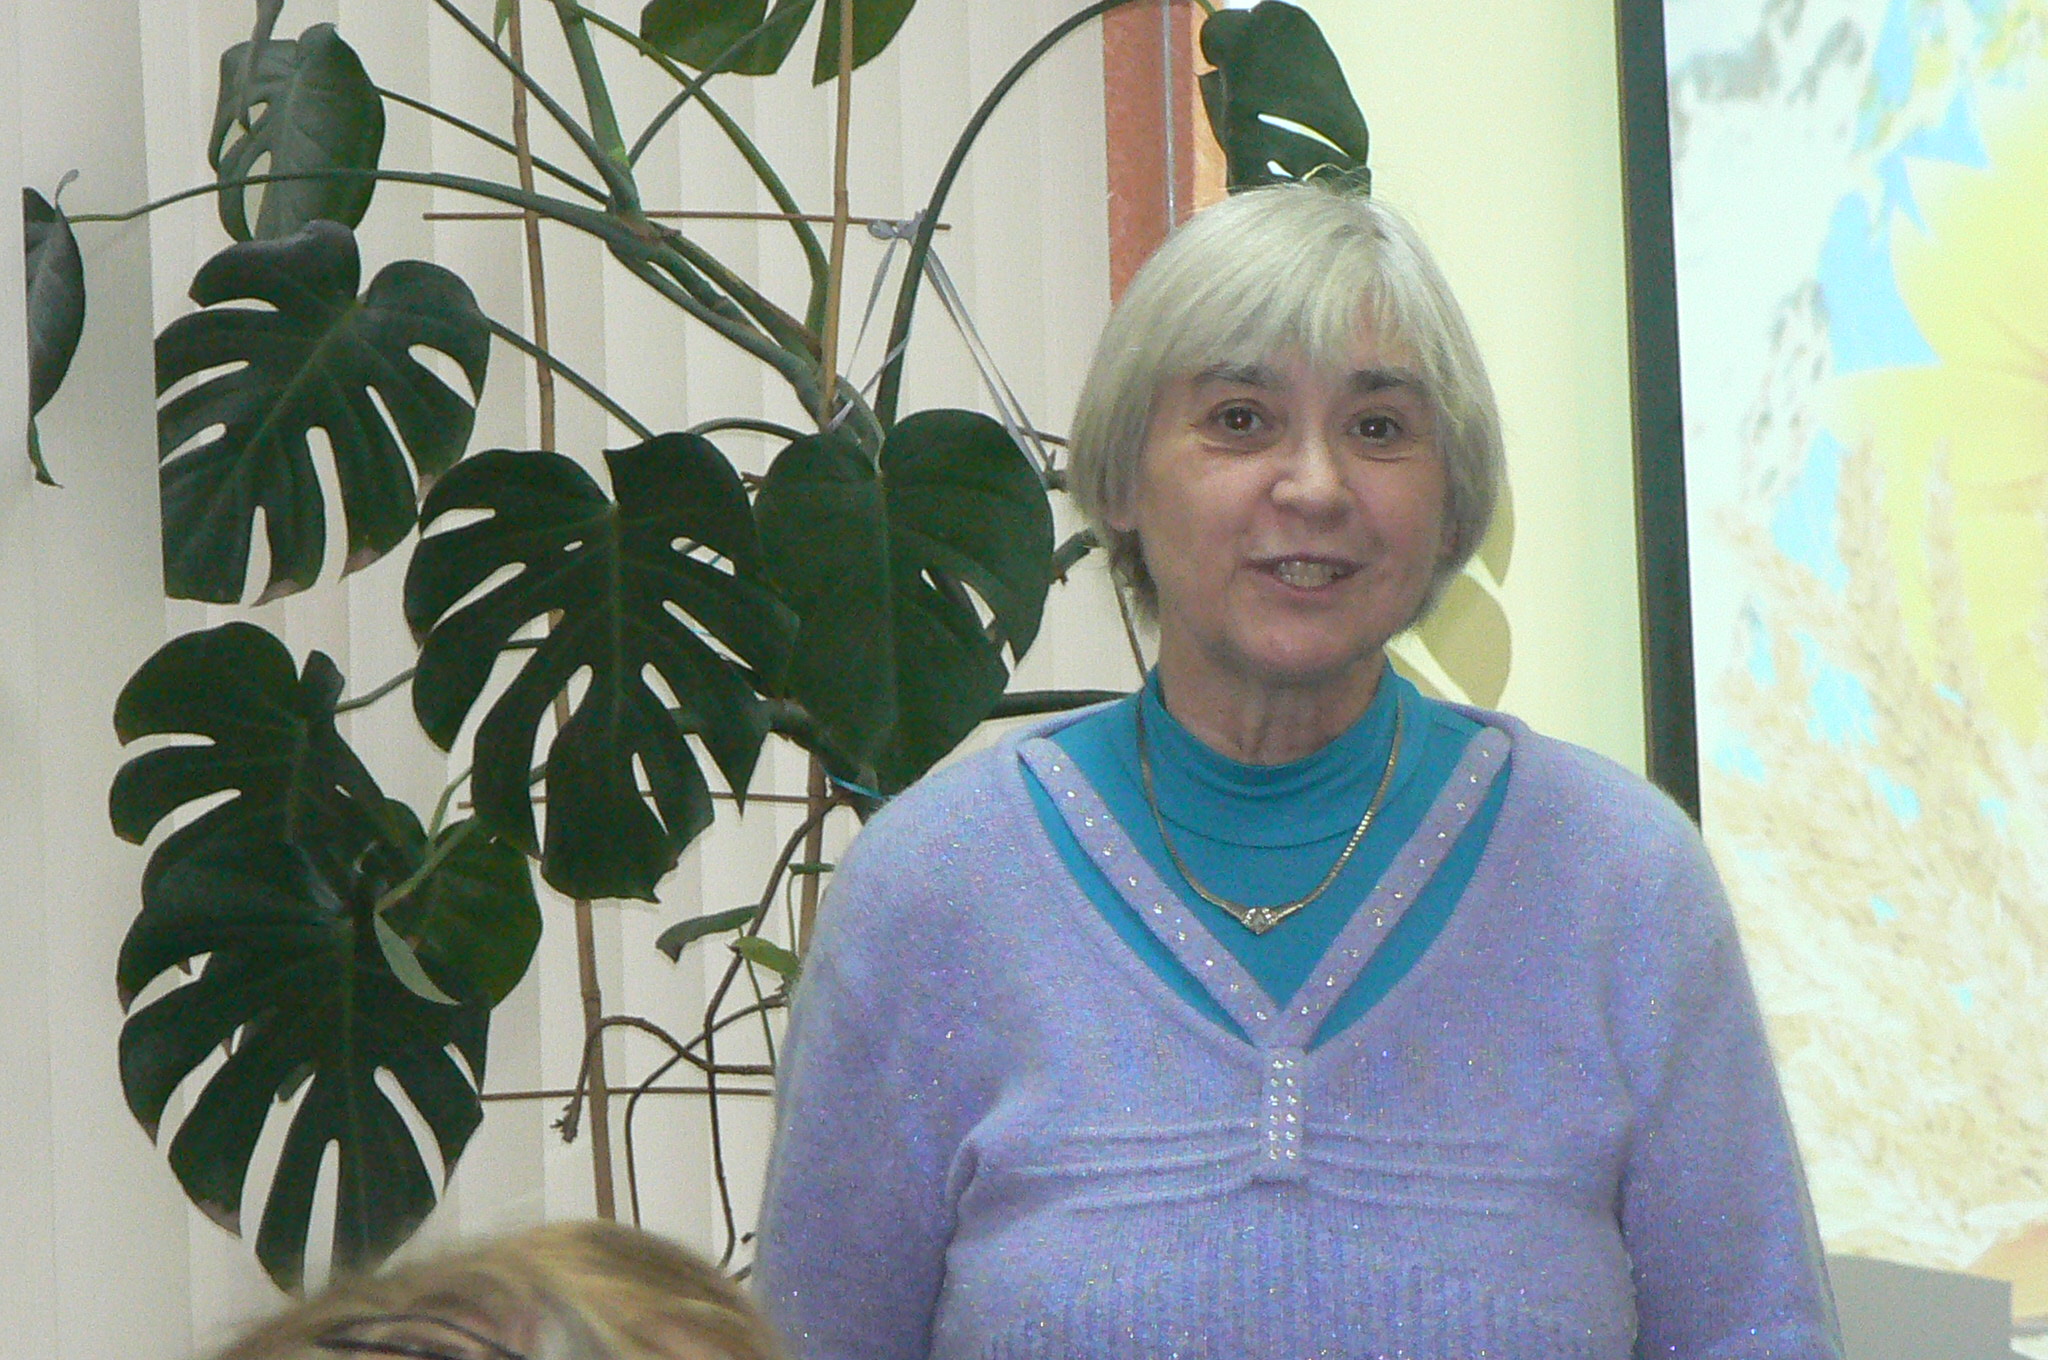 писательница Ирина Глебова-Полякова рассказывает о студии ХТЗ 60-х – 80-х годов и читает свои стихи из цикла «Рабочий посёлок».